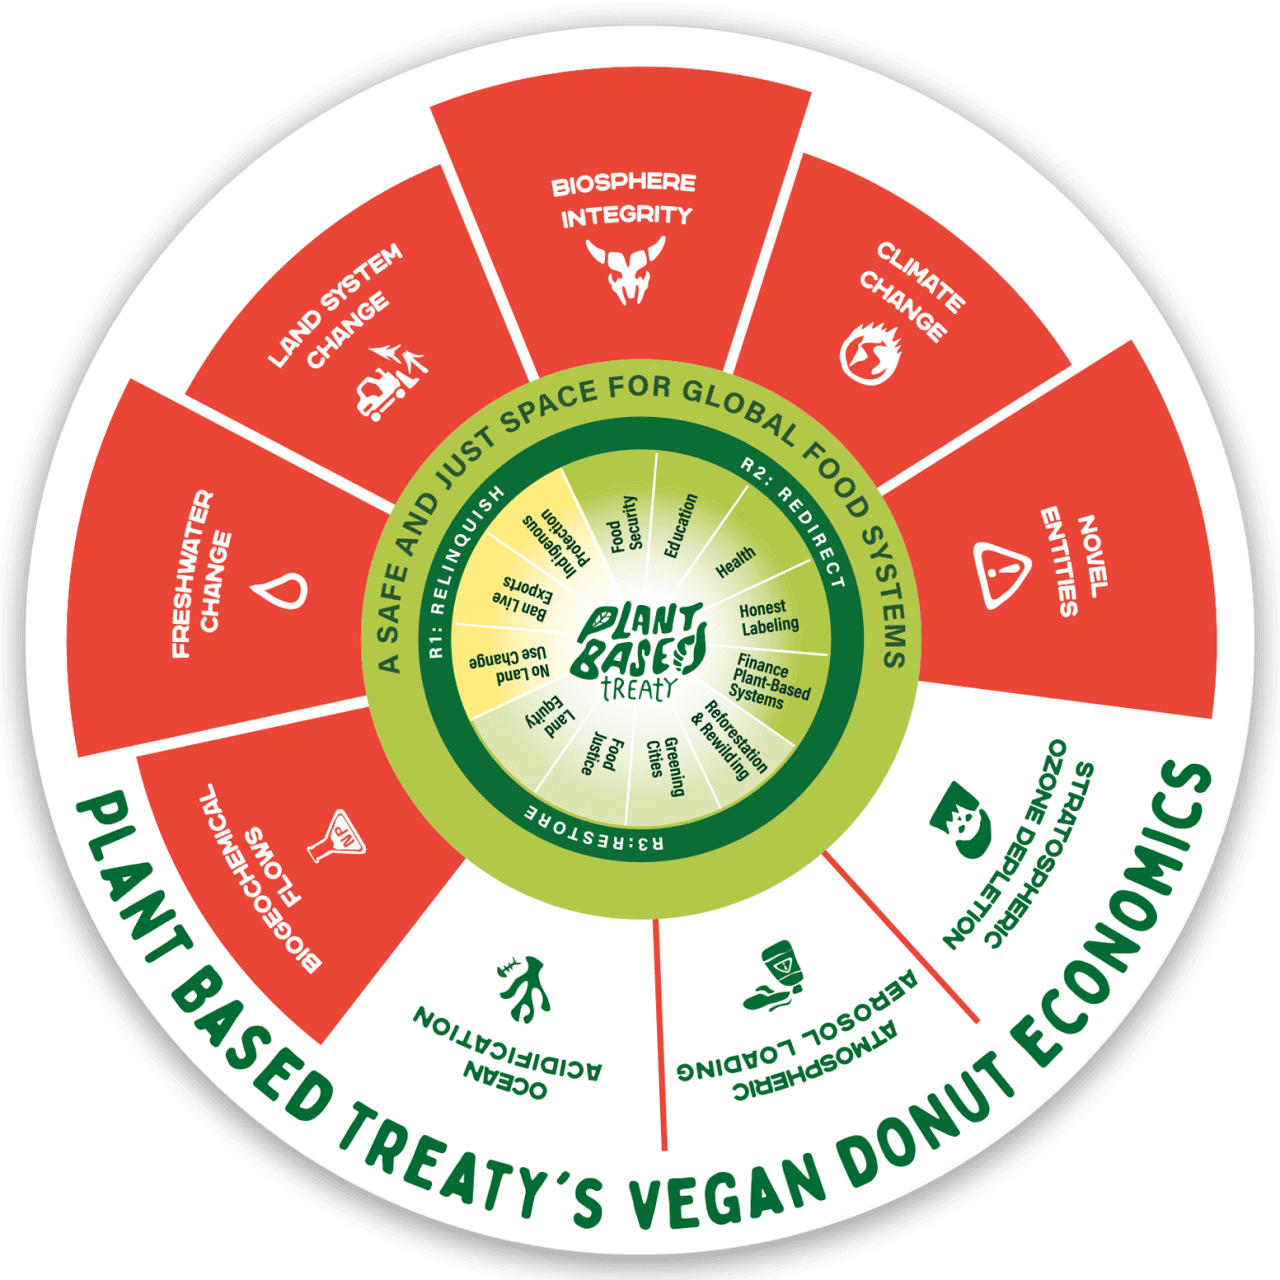 COP28 | Vegan Donut Economics - Plant Based Treaty